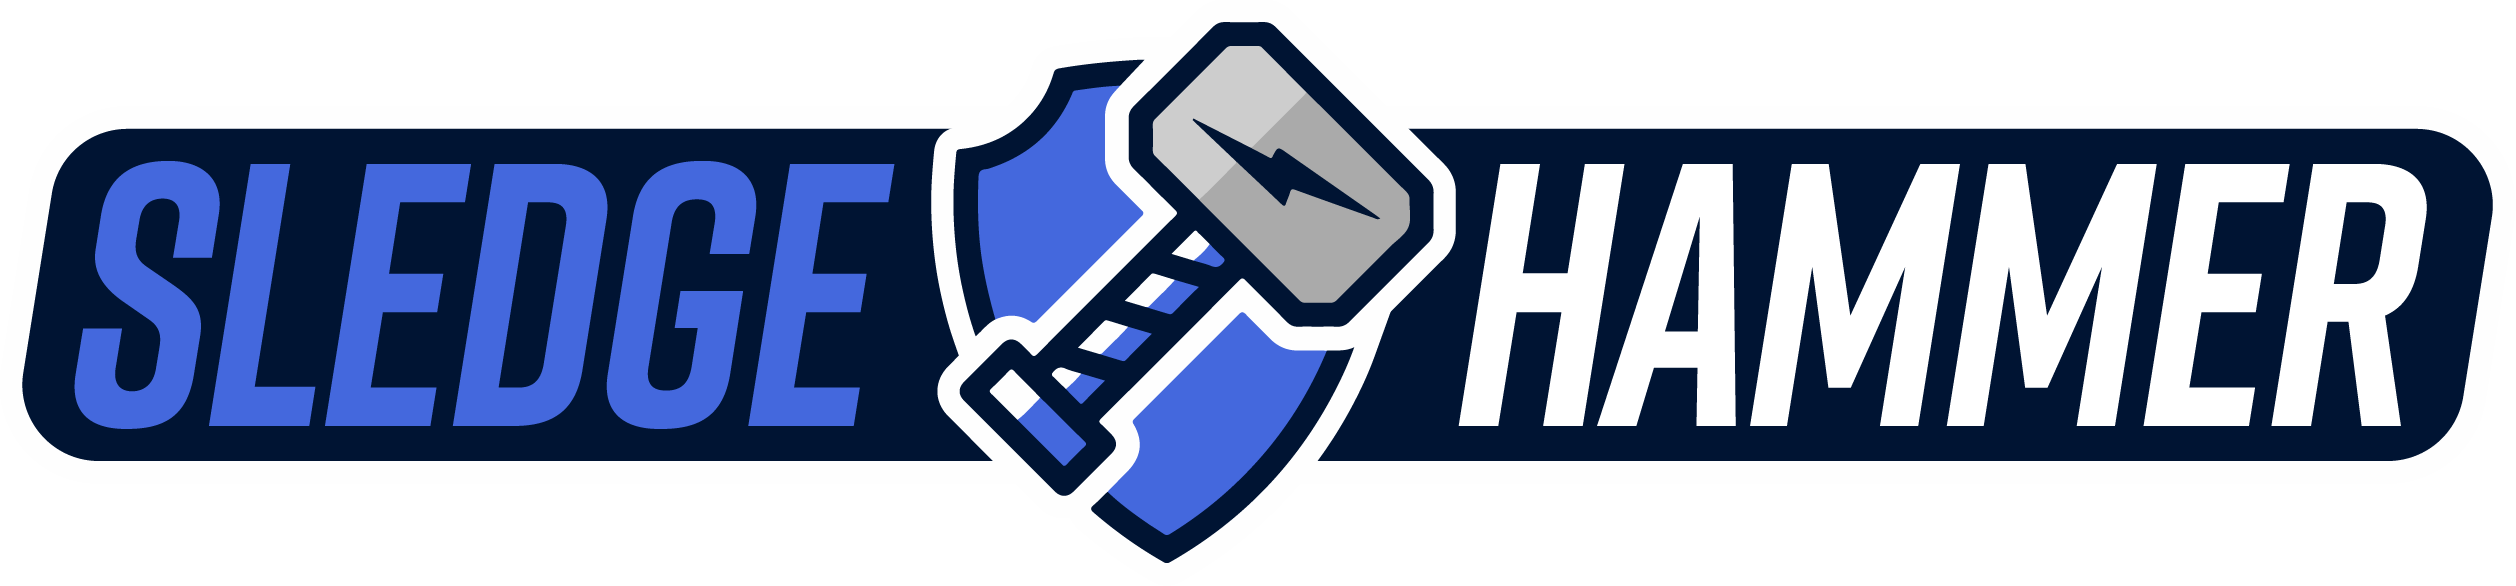 Sledgehammer Logo